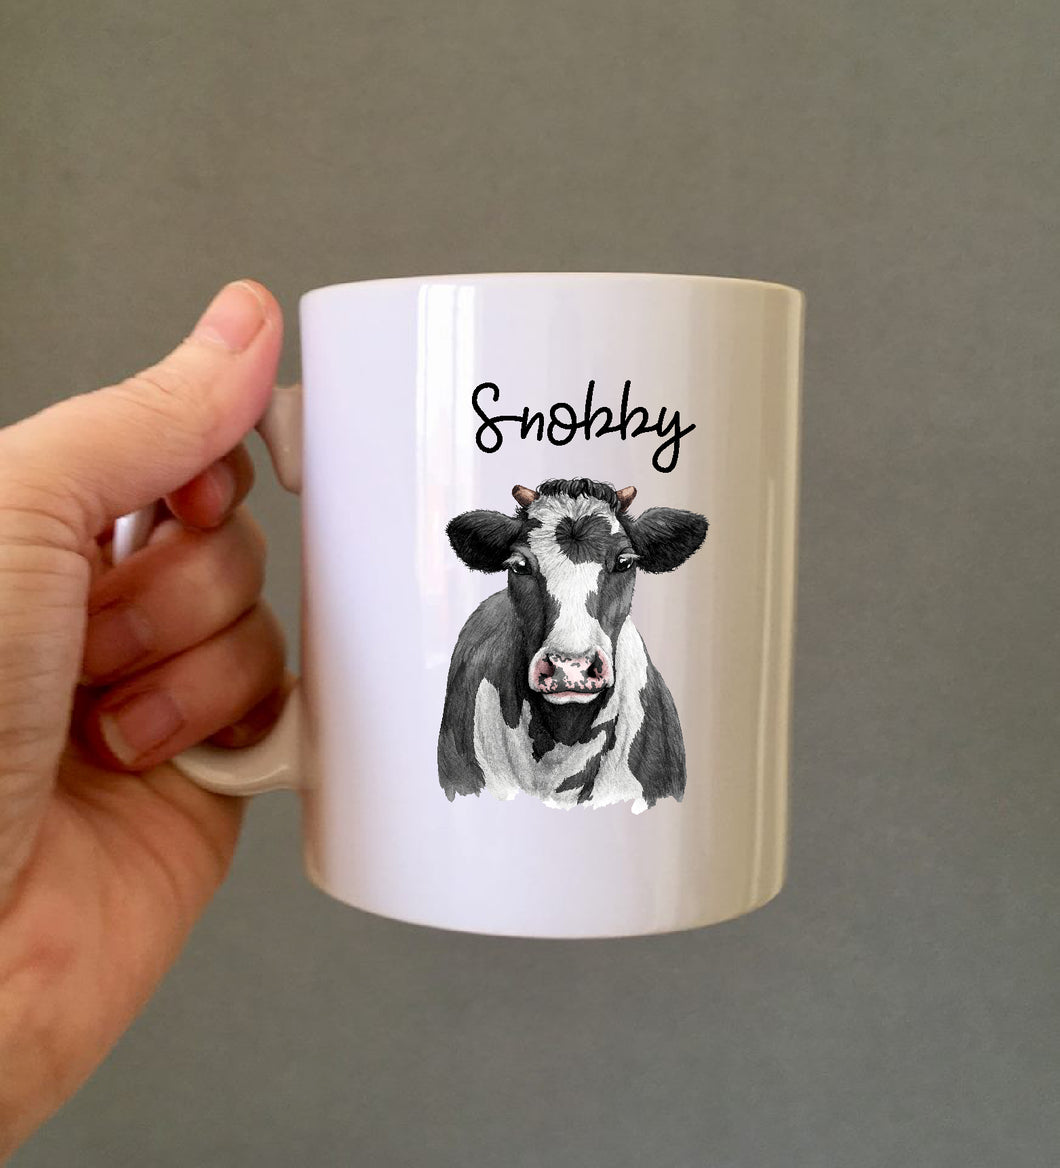 Snobby Cow Ceramic Printed Mug